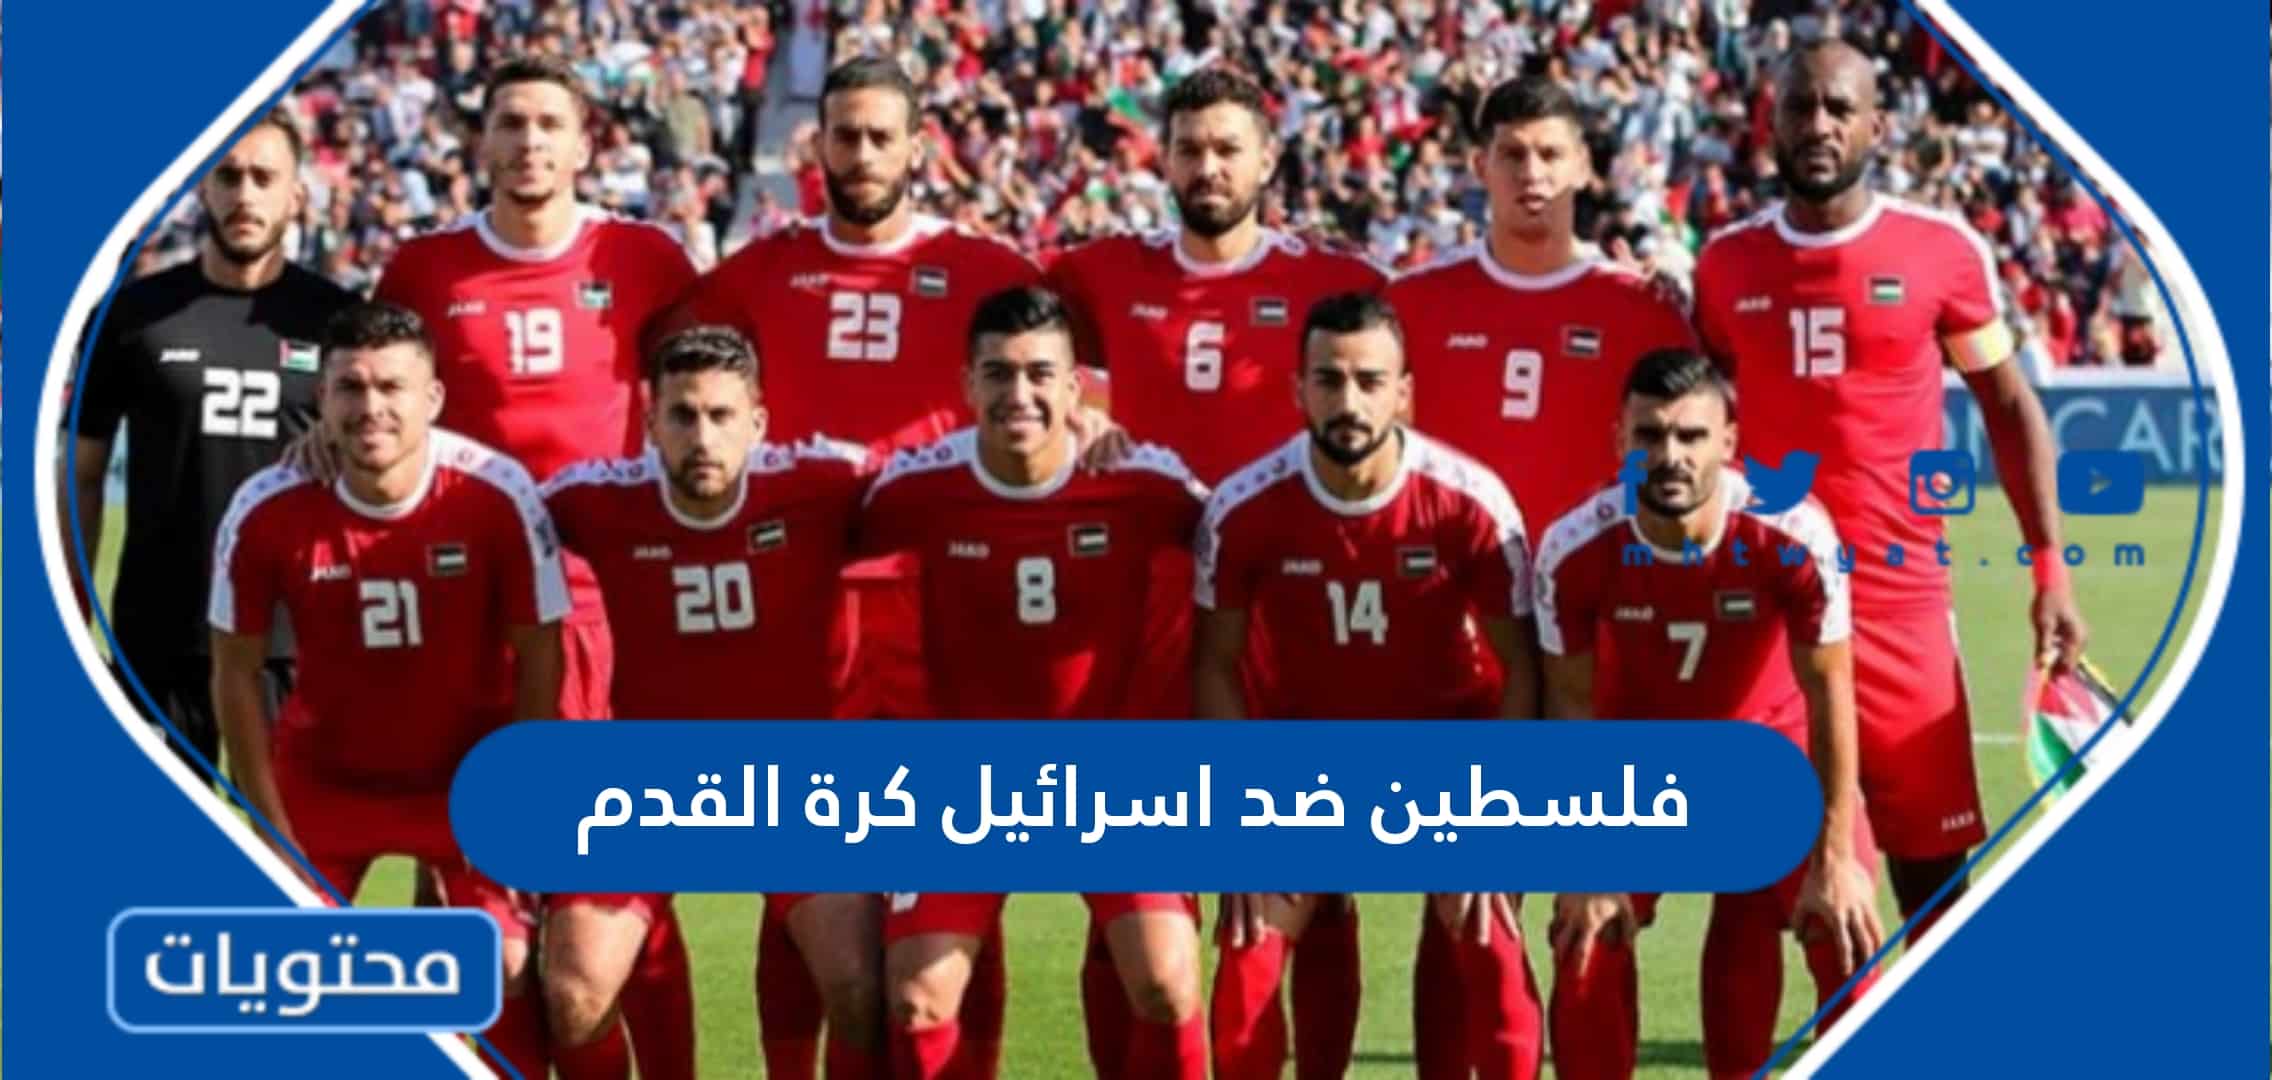 تاريخ مواجهات فلسطين ضد اسرائيل في كرة القدم